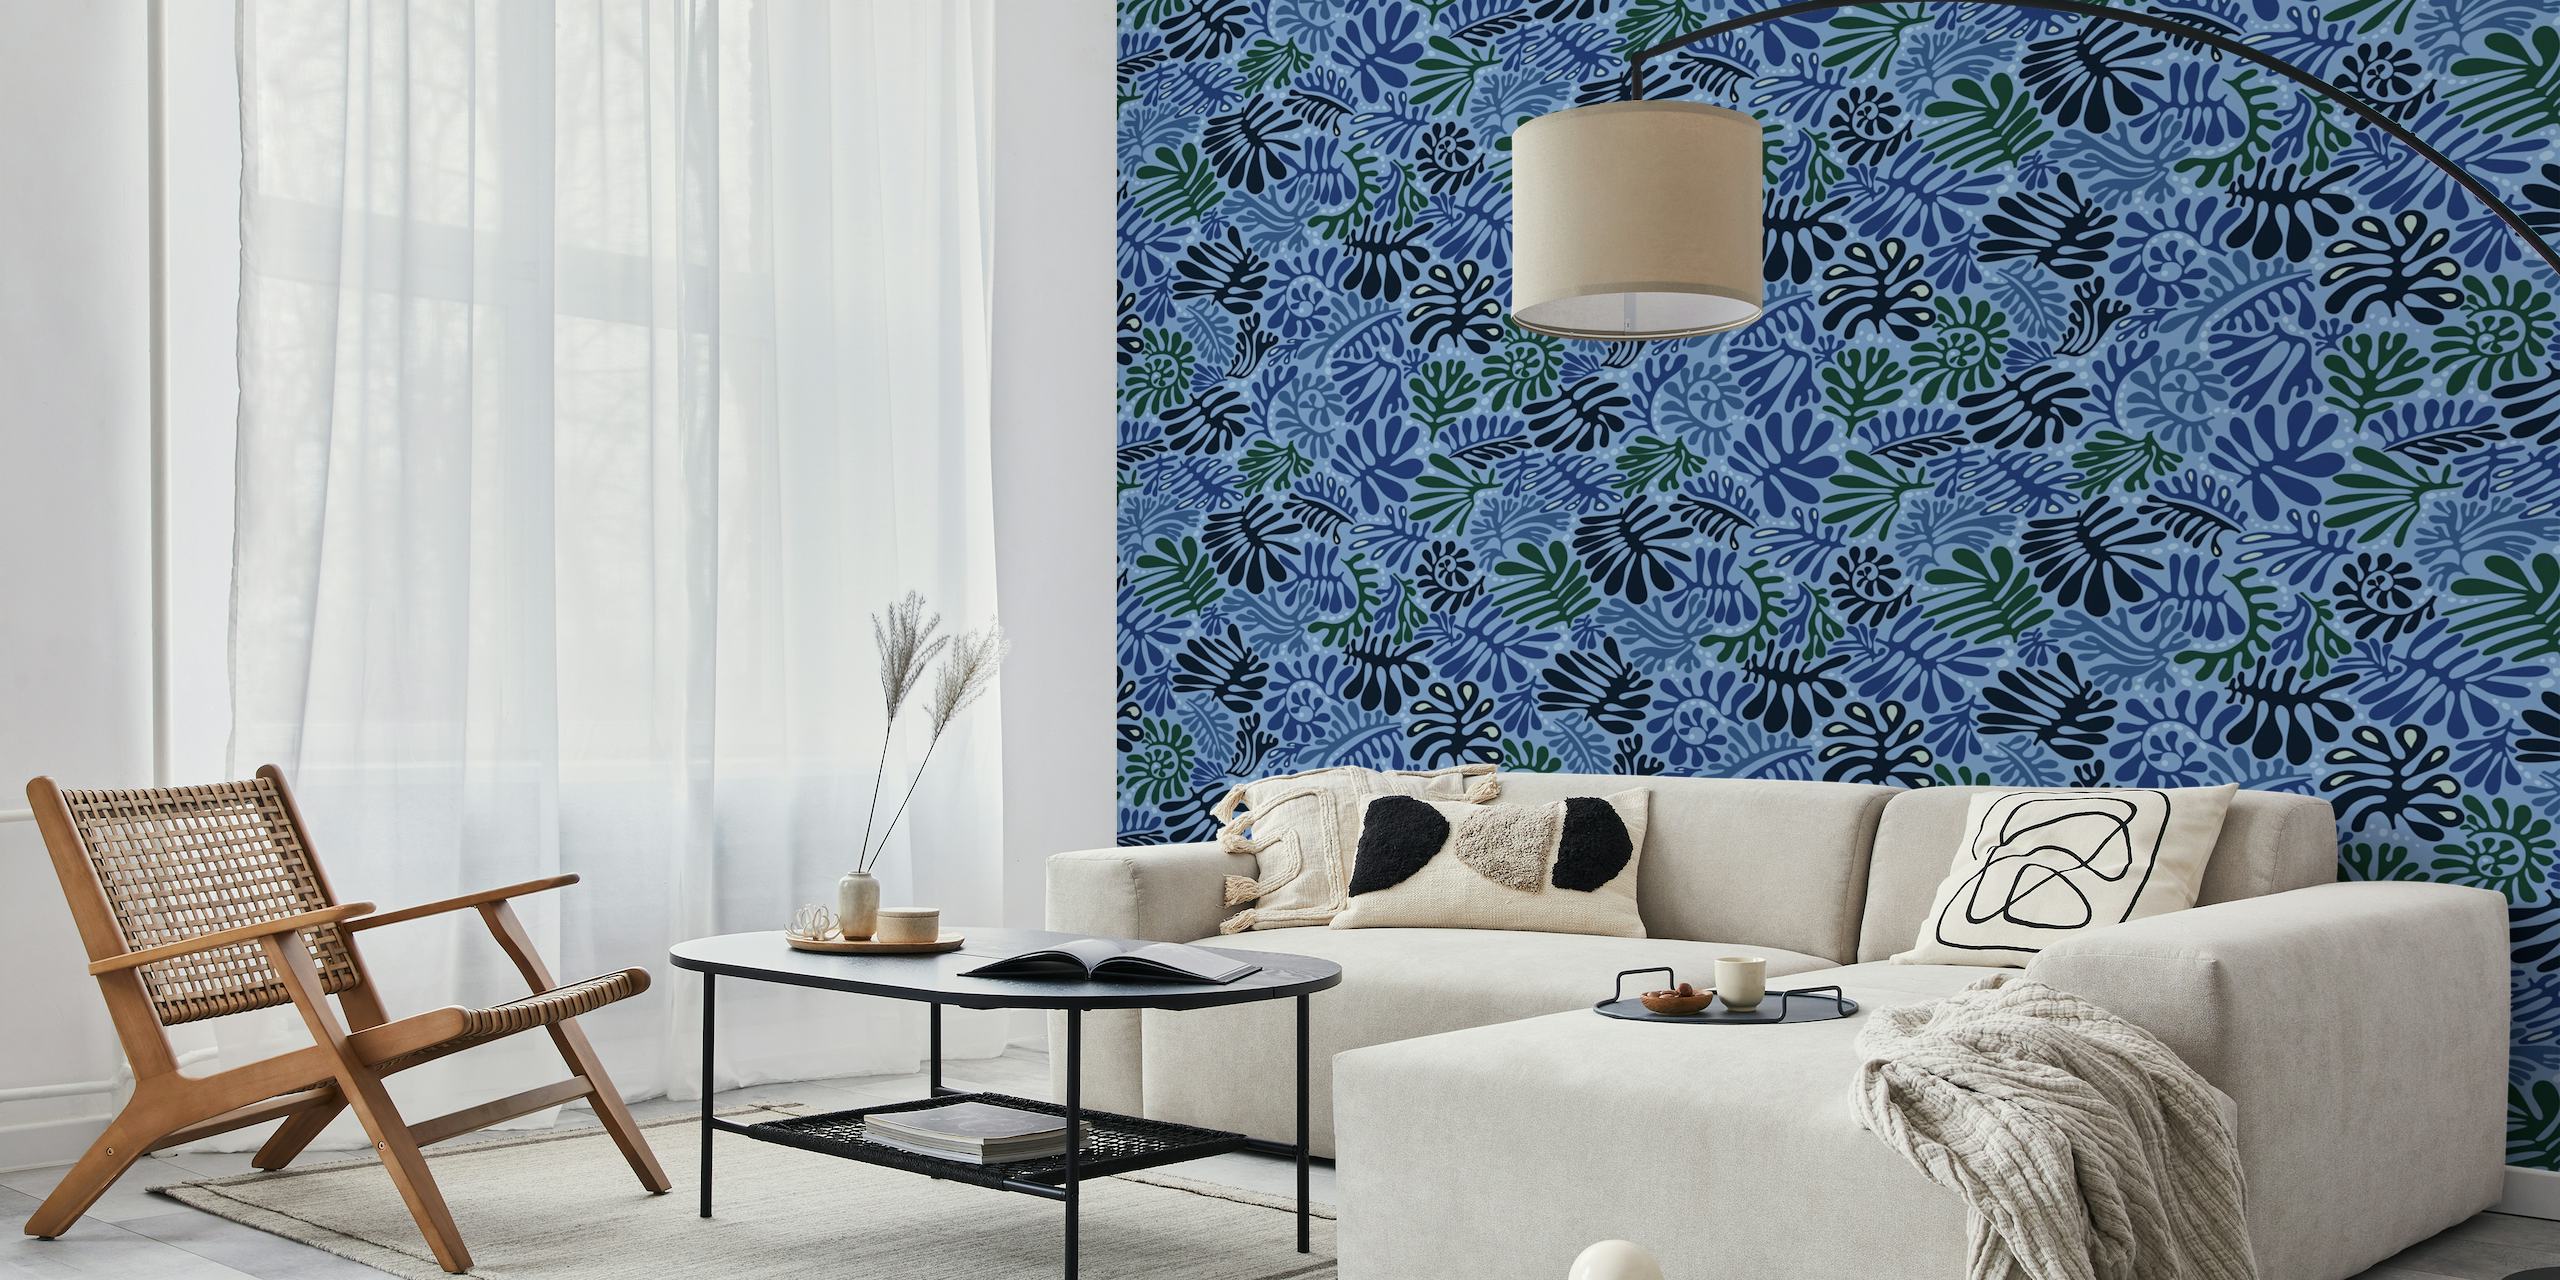 Stijlvolle fotobehang met blauw bladpatroon van happywall.com met verschillende tinten blauw en uitgesneden ontwerpen van planten.